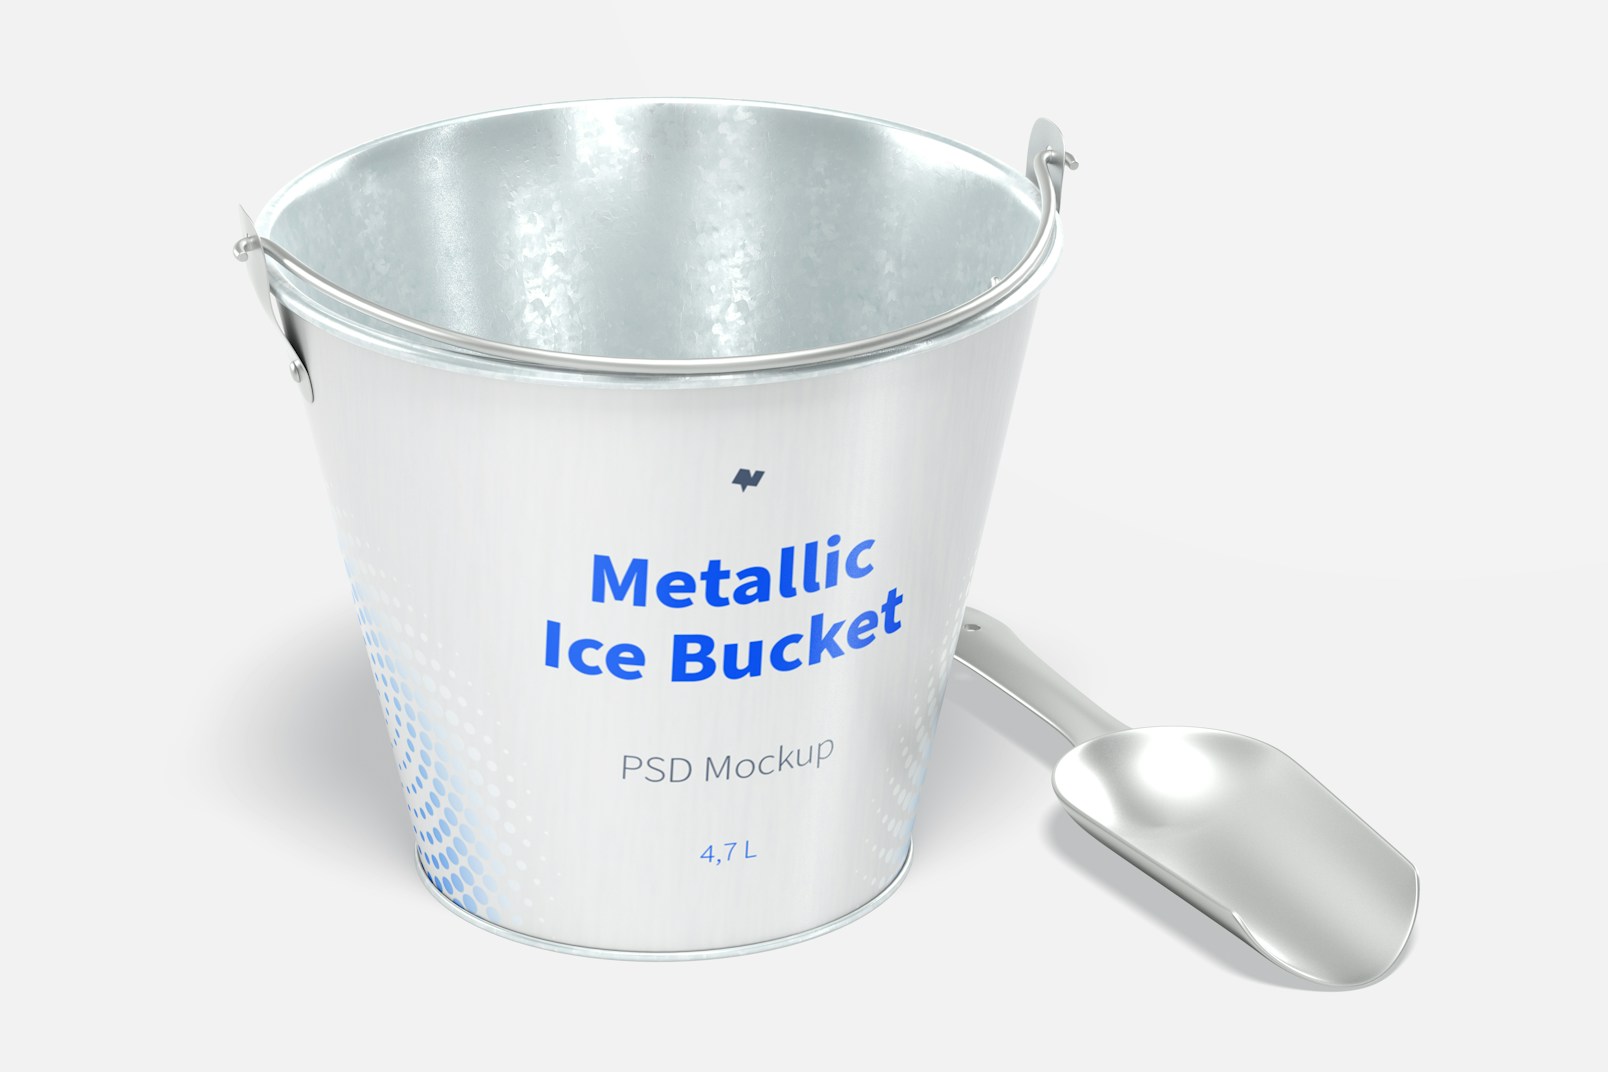 Metallic Ice Bucket Mockup, Front View